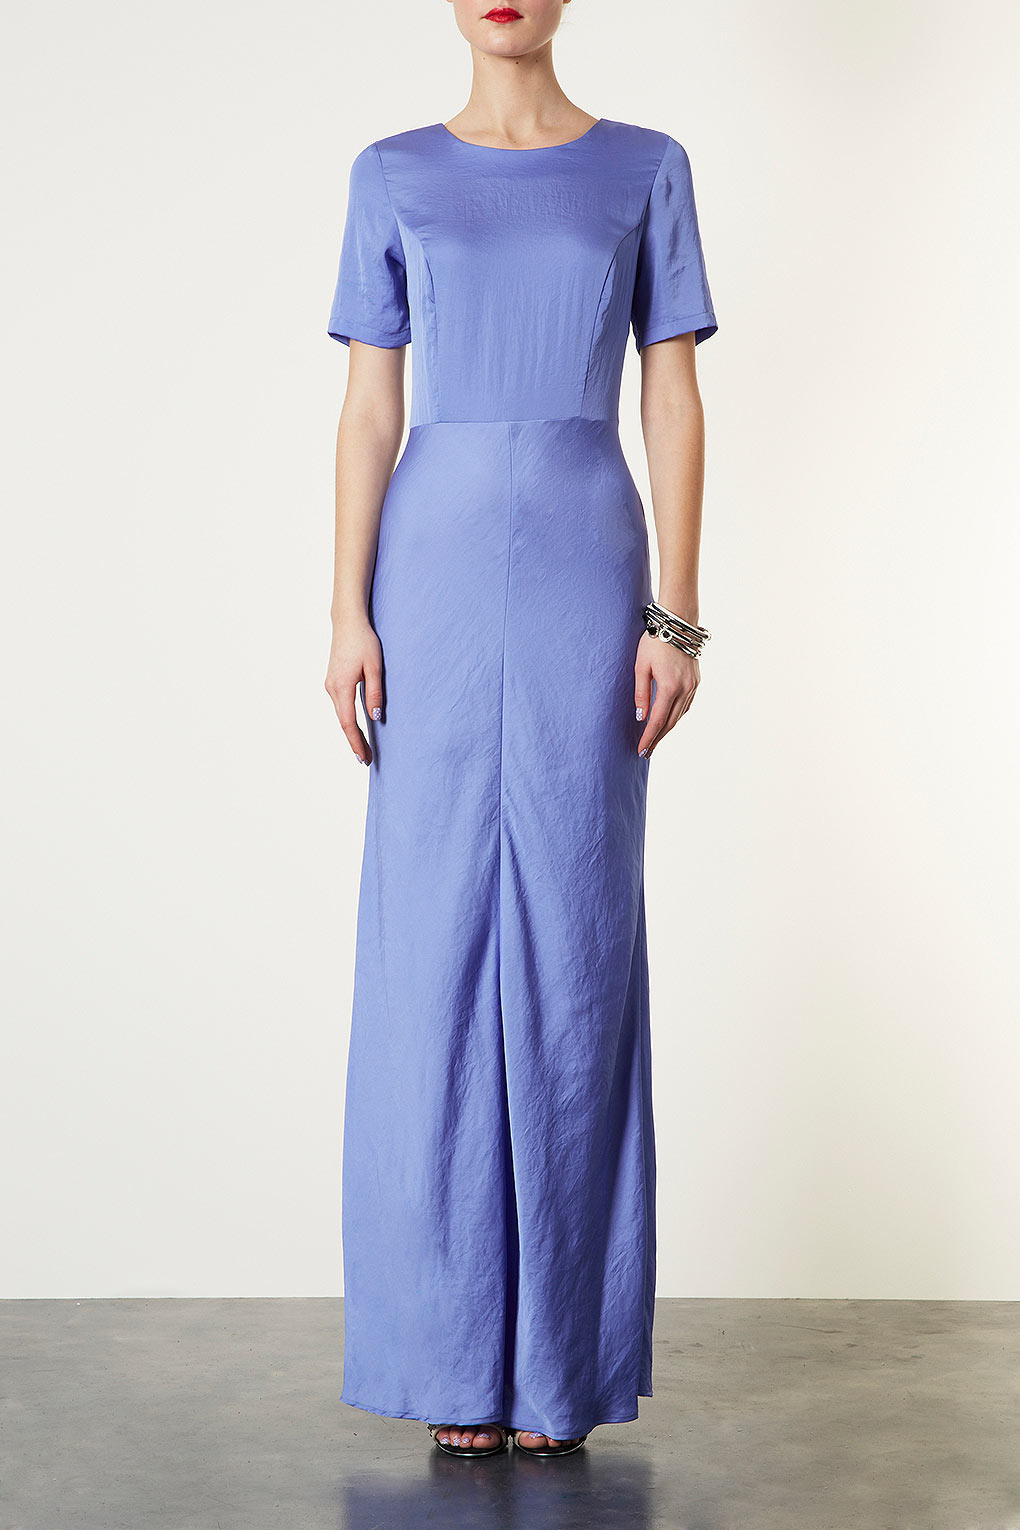 topshop blue maxi dress